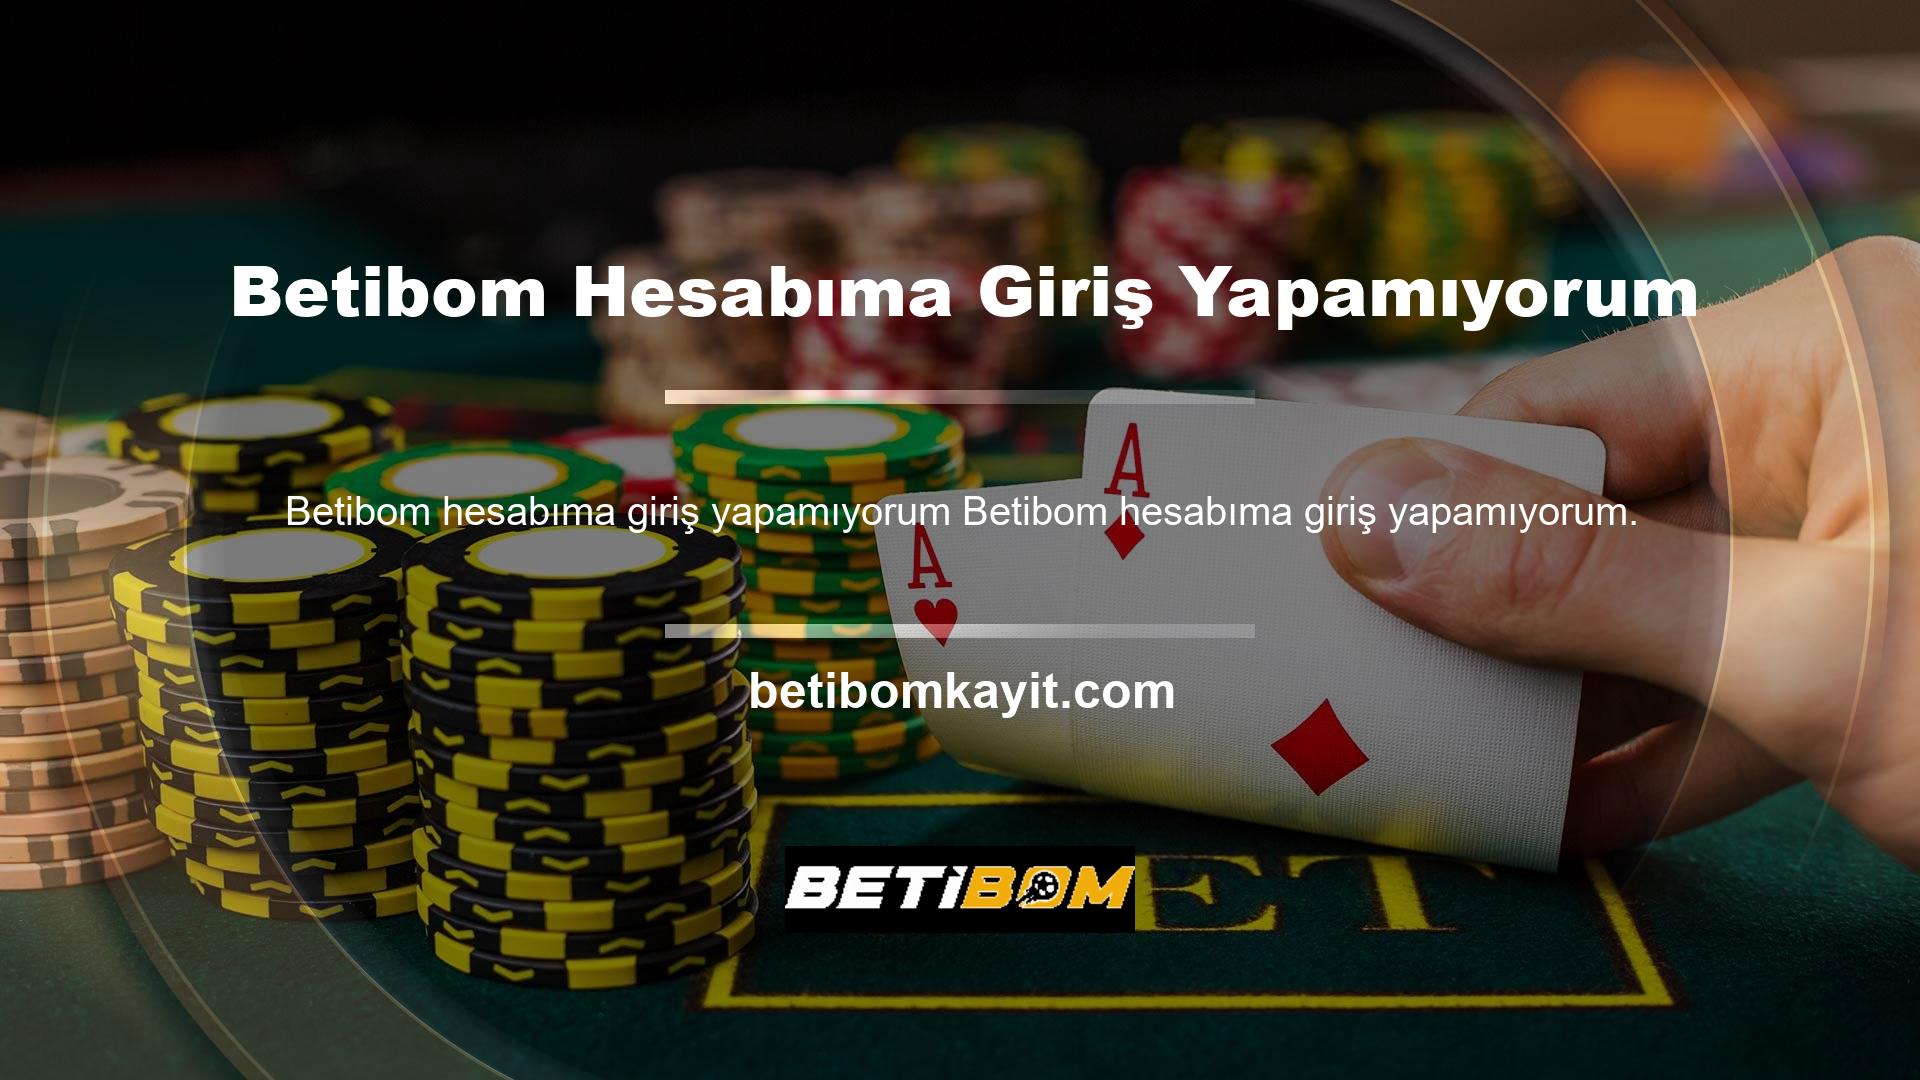 Eğer aktif bir casino tutkunu ya da bahis meraklısı iseniz Betibom ismini şüphesiz duymuşsunuzdur